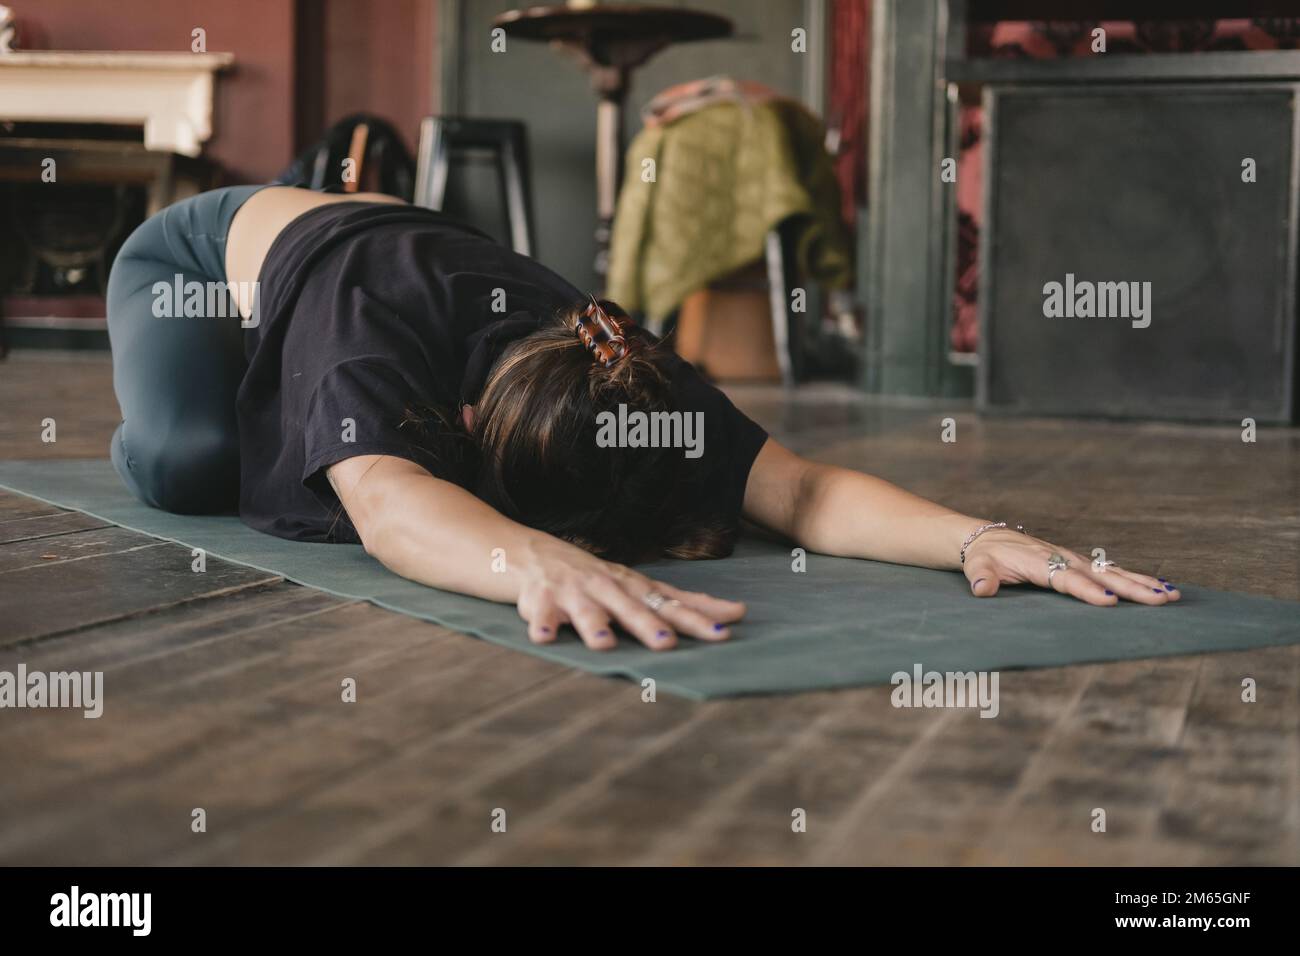 Ganzkörperfoto von weiblichem Yoga, das sich in der Kinderhaltung ruht (Balasana), mit ausgestreckten Armen während ihres Vinyasa-Flow-Yoga-Trainings allein in Sportbekleidung Stockfoto